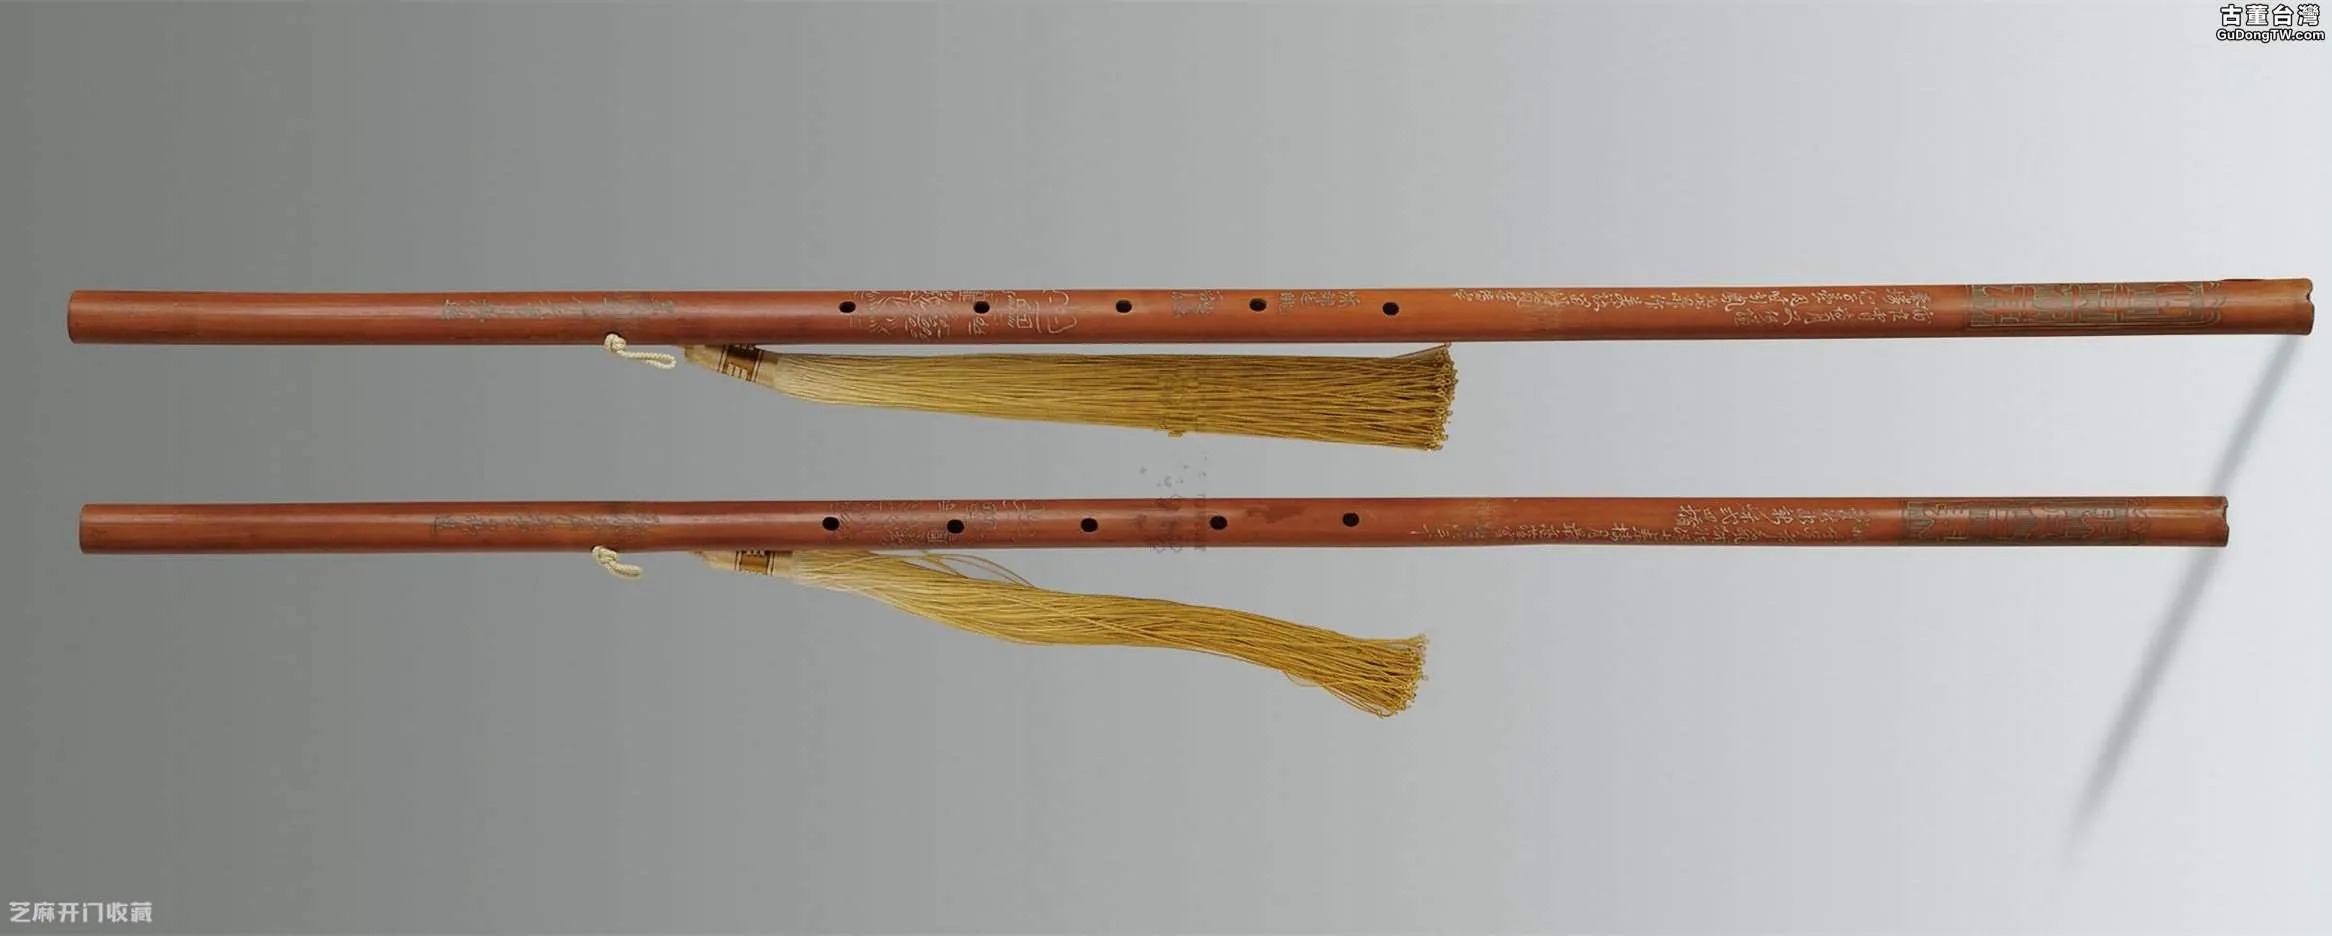 玉屏竹簫製造工藝及收藏價值